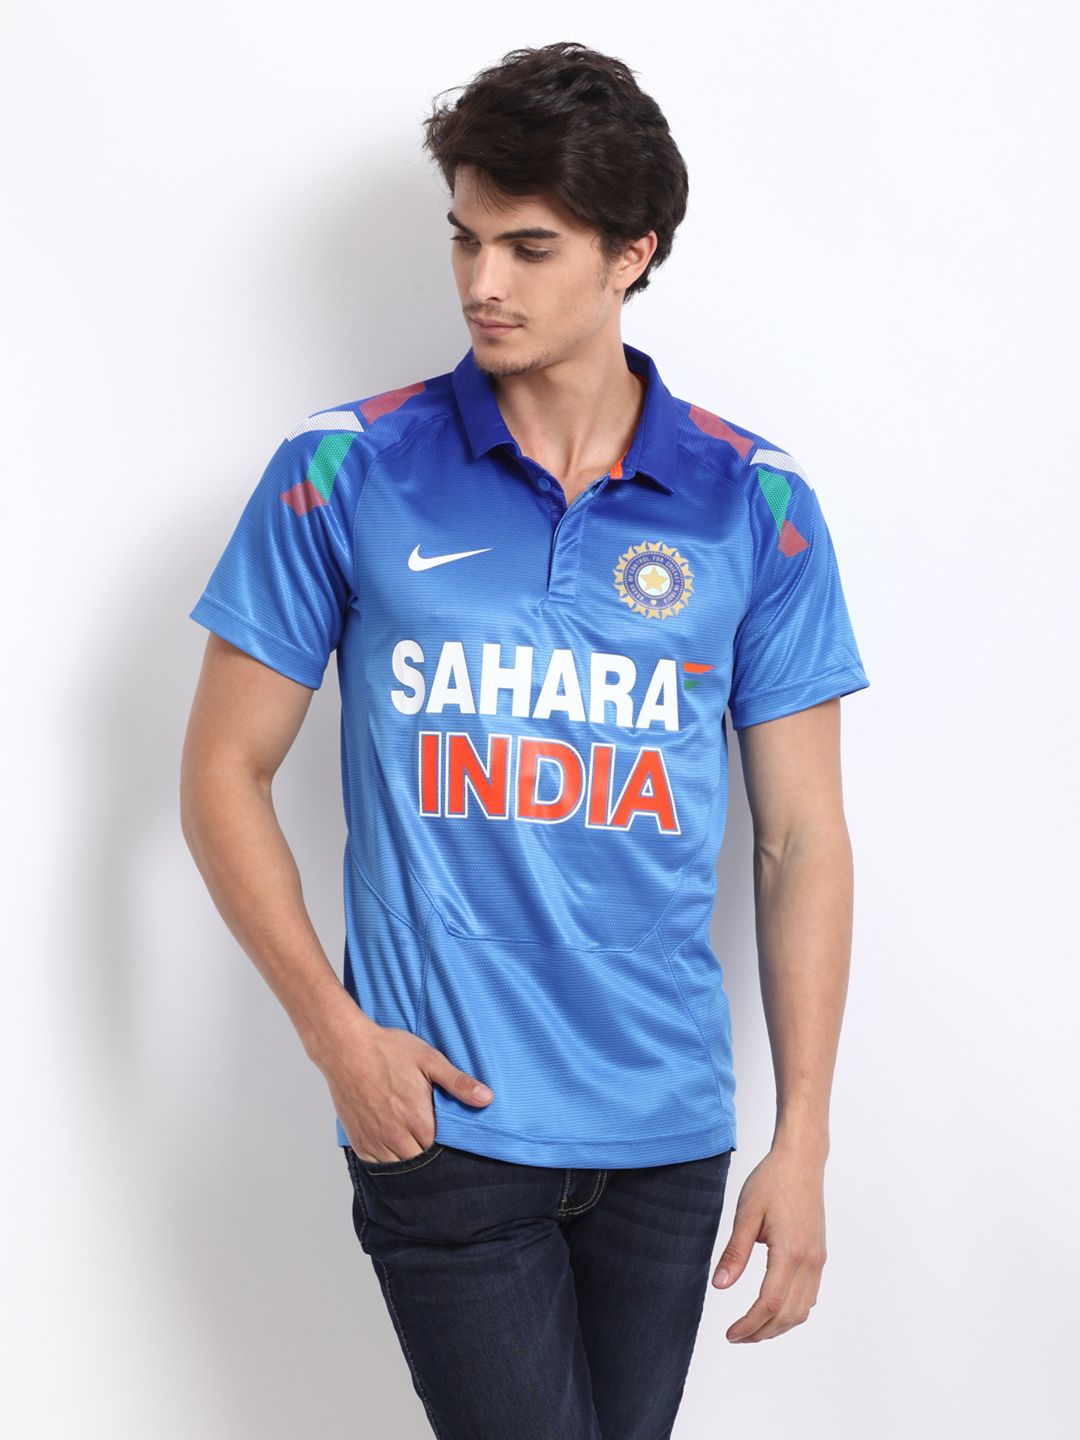 india sahara jersey